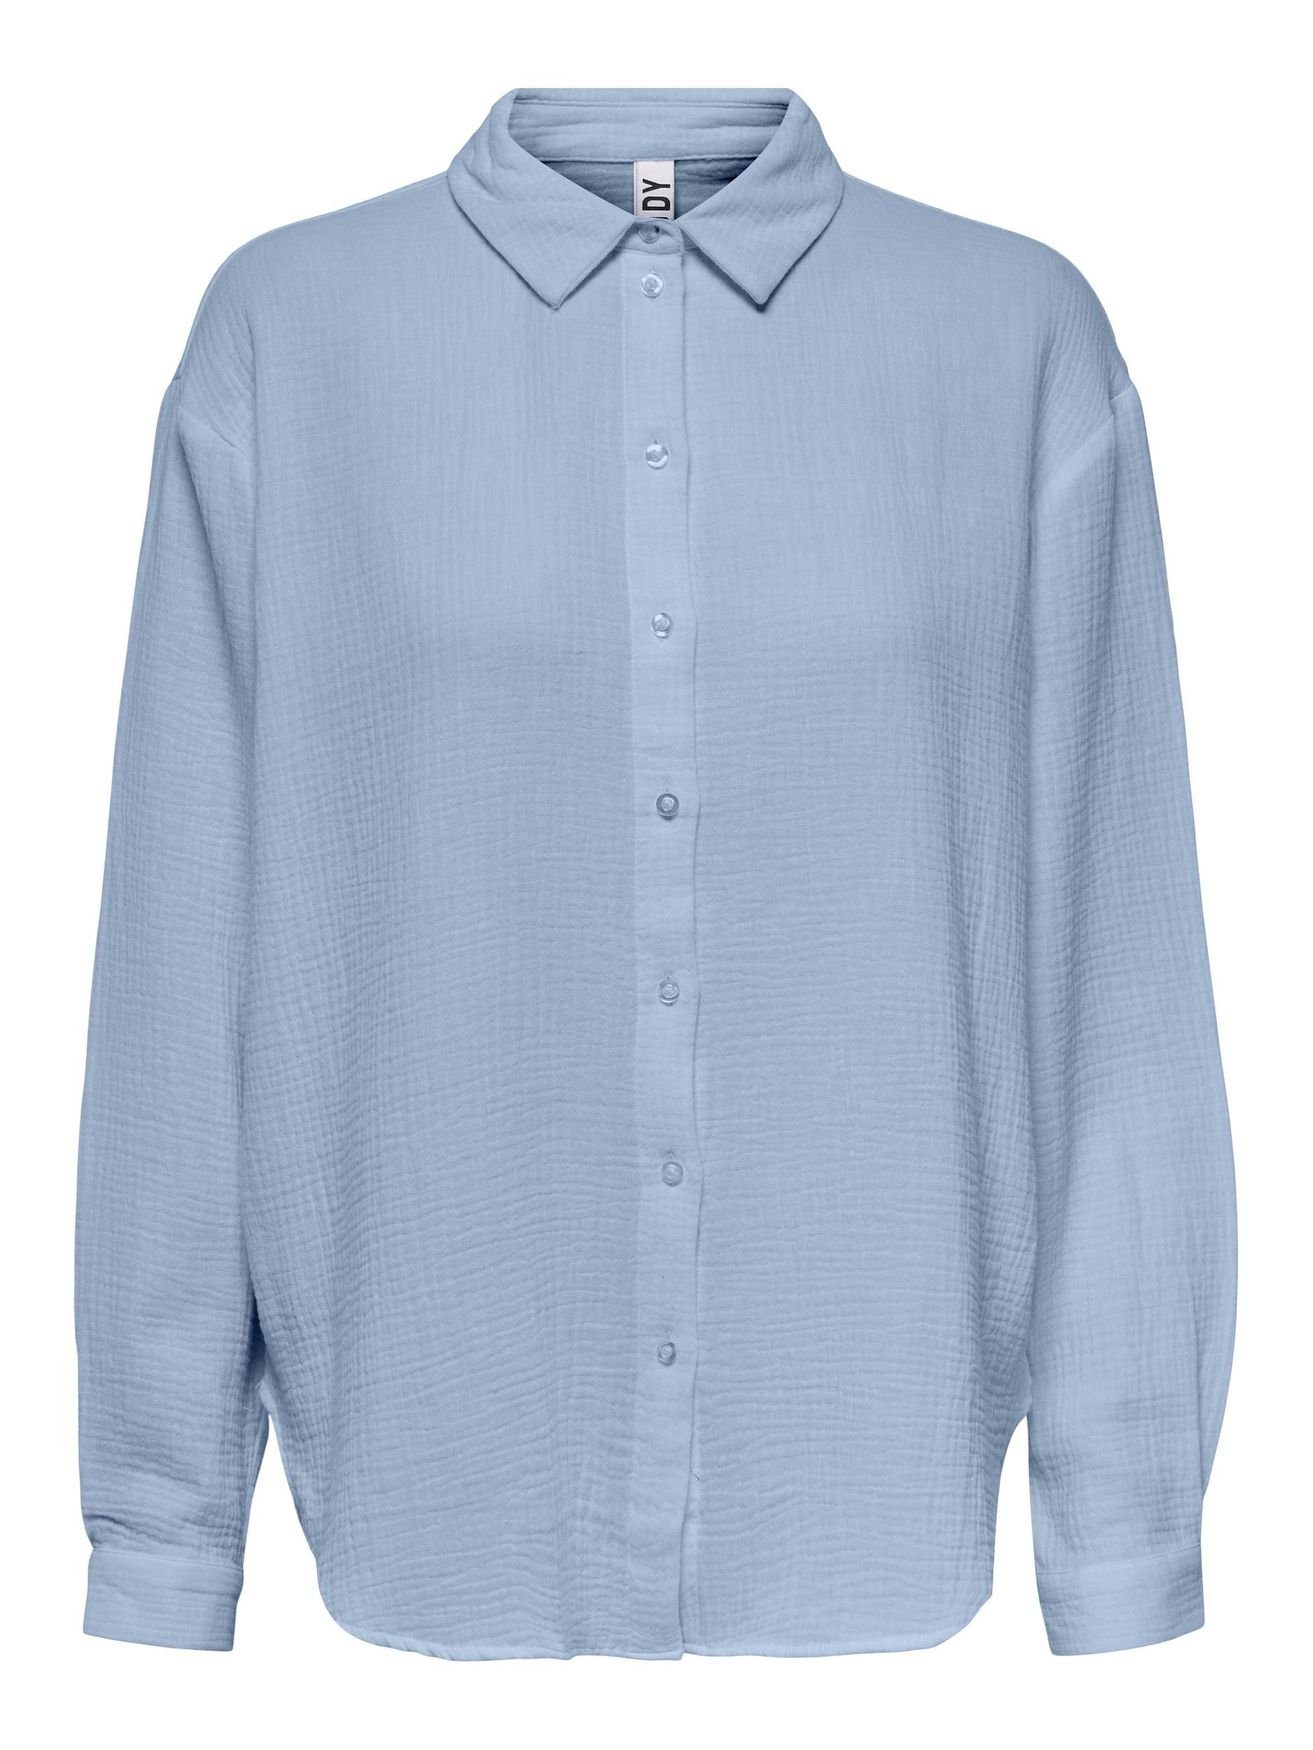 JACQUELINE de YONG Blusenshirt Elegantes Hemd Langarm Bluse in Knitteroptik JDYTHEIS 4944 in Blau | Longshirts